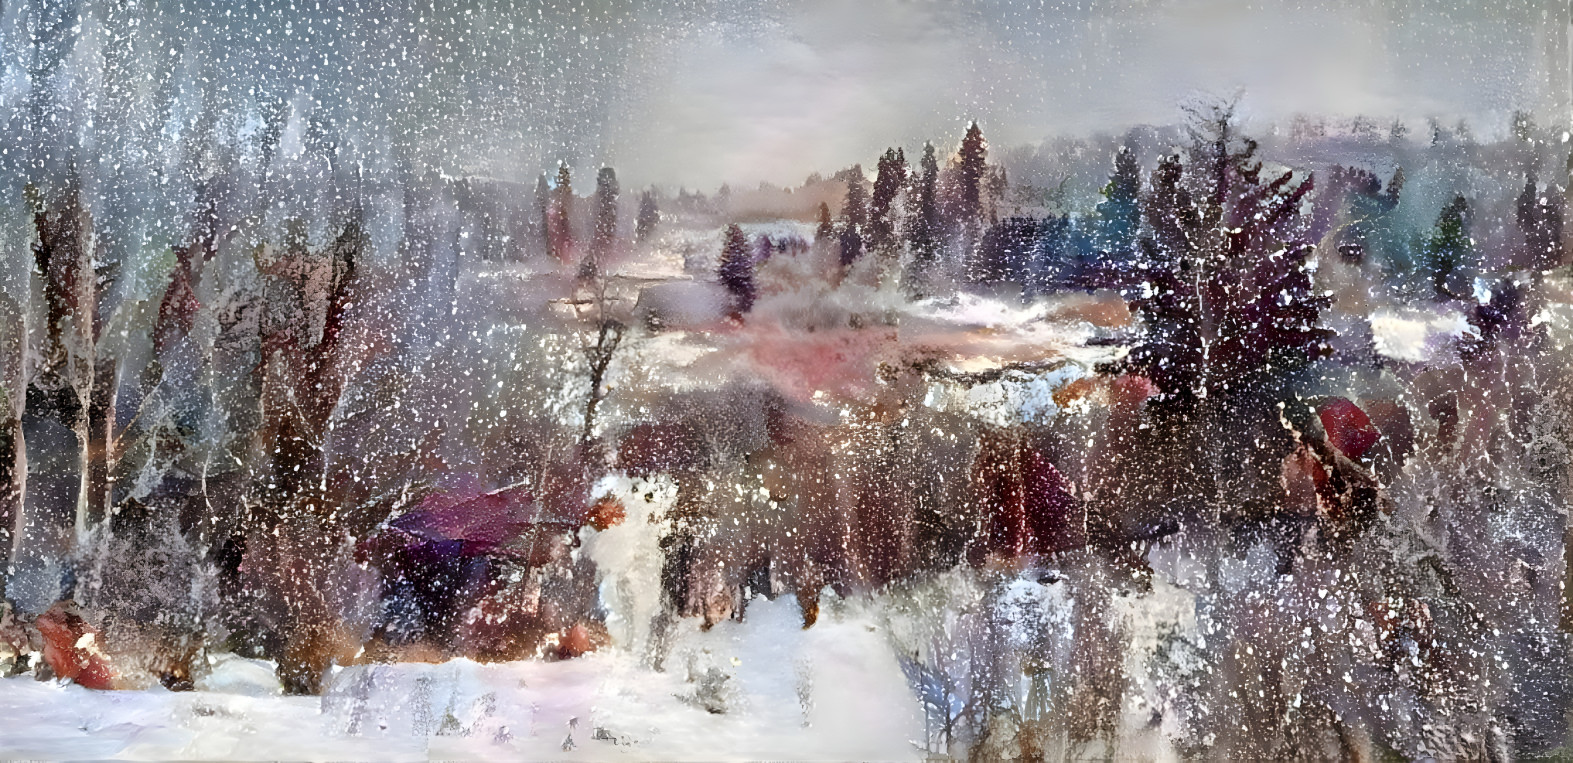 Winter Landscape - Let it snow